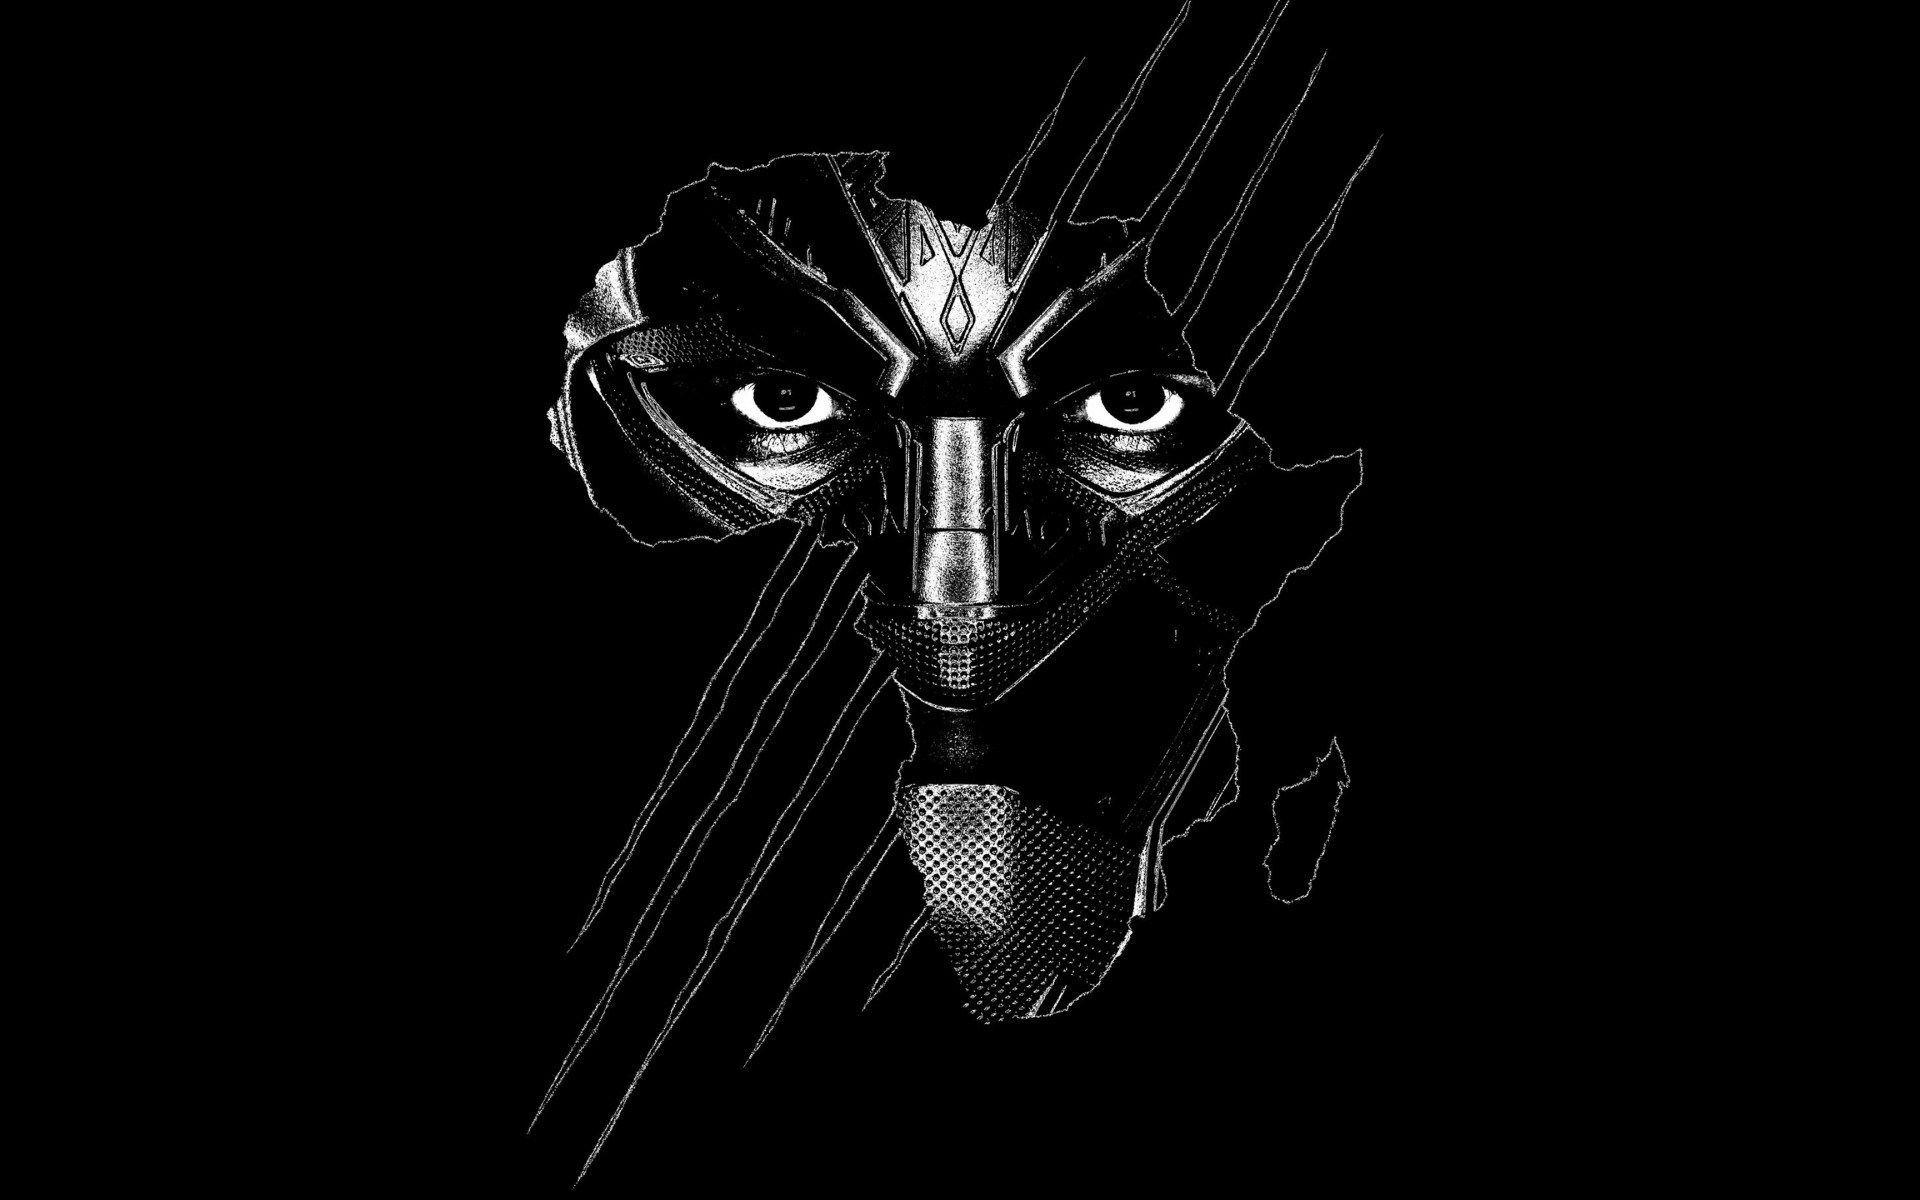 Đồ họa Black Panther 4K đẳng cấp và tuyệt vời nhất đang chờ đón bạn. Trải nghiệm những hình ảnh chân thực và sắc nét tới từng chi tiết nhỏ nhất. Khám phá thế giới siêu anh hùng ngay trên màn hình của bạn với đồ họa 4K vượt trội.